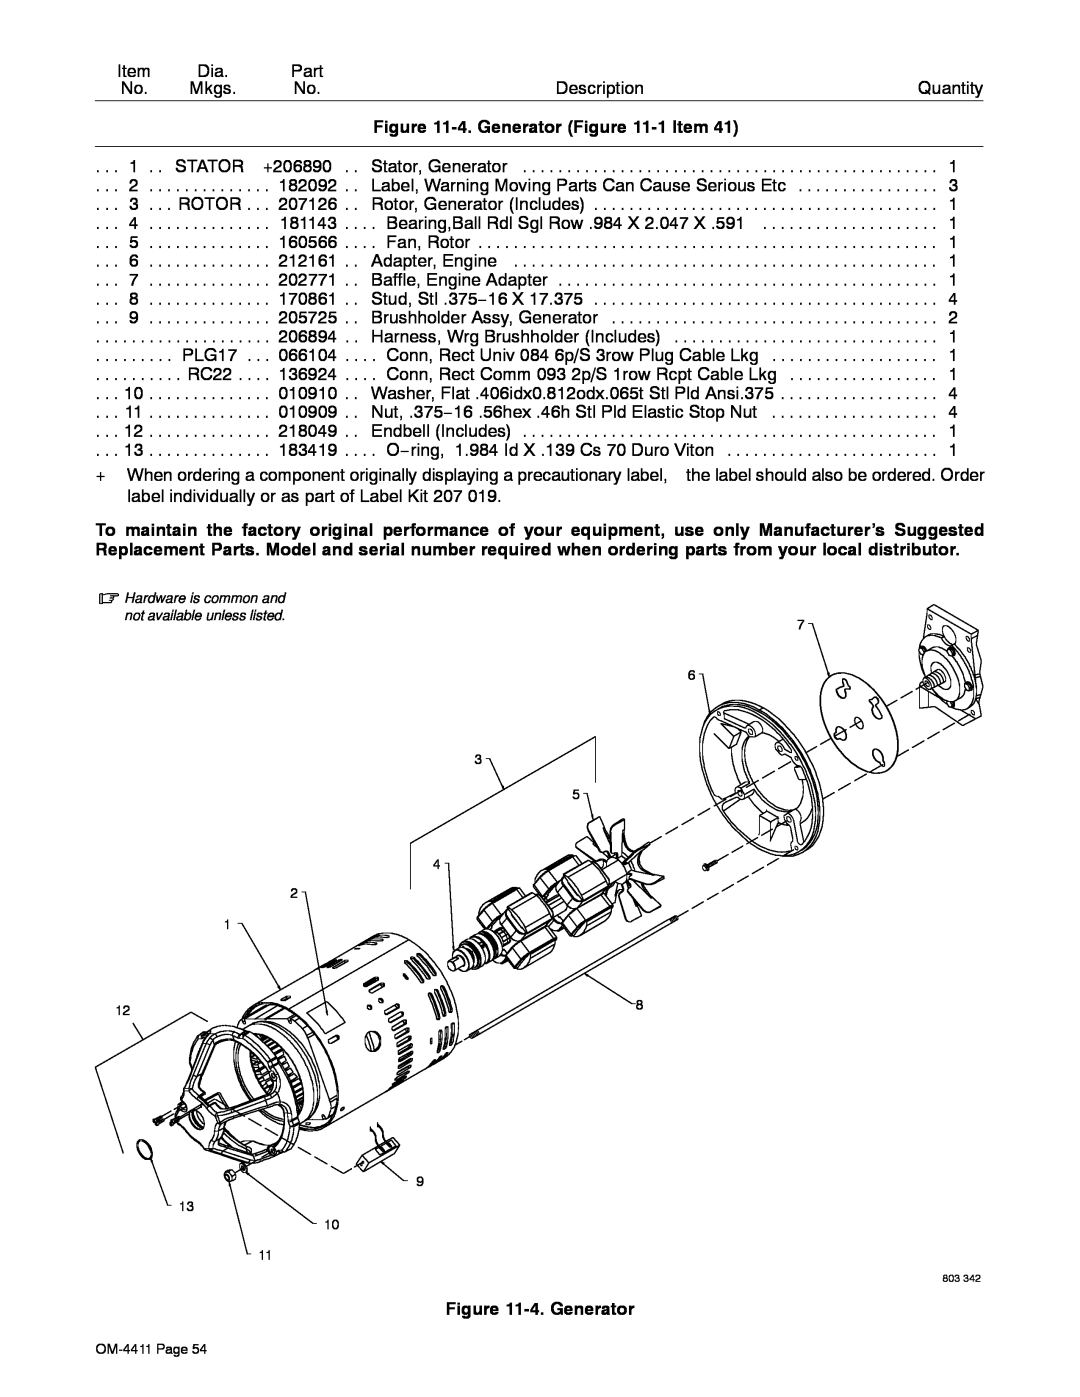 Miller Electric 301 G manual 4. Generator -1 Item, Stator, Generator 